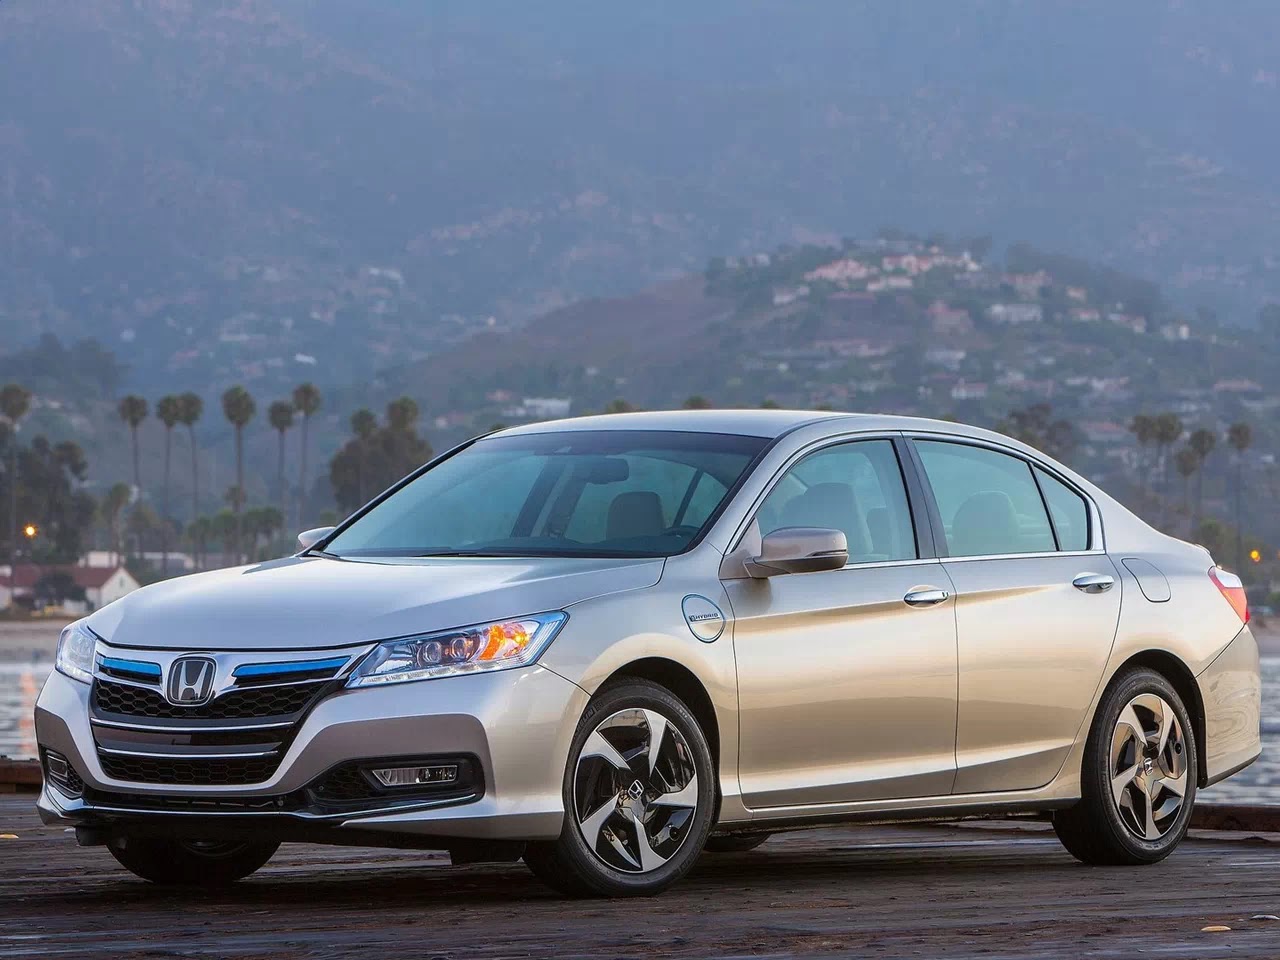 Mobil Honda Accord Terbaru Dipasarkan Tahun 2014 Koleksi Mobil